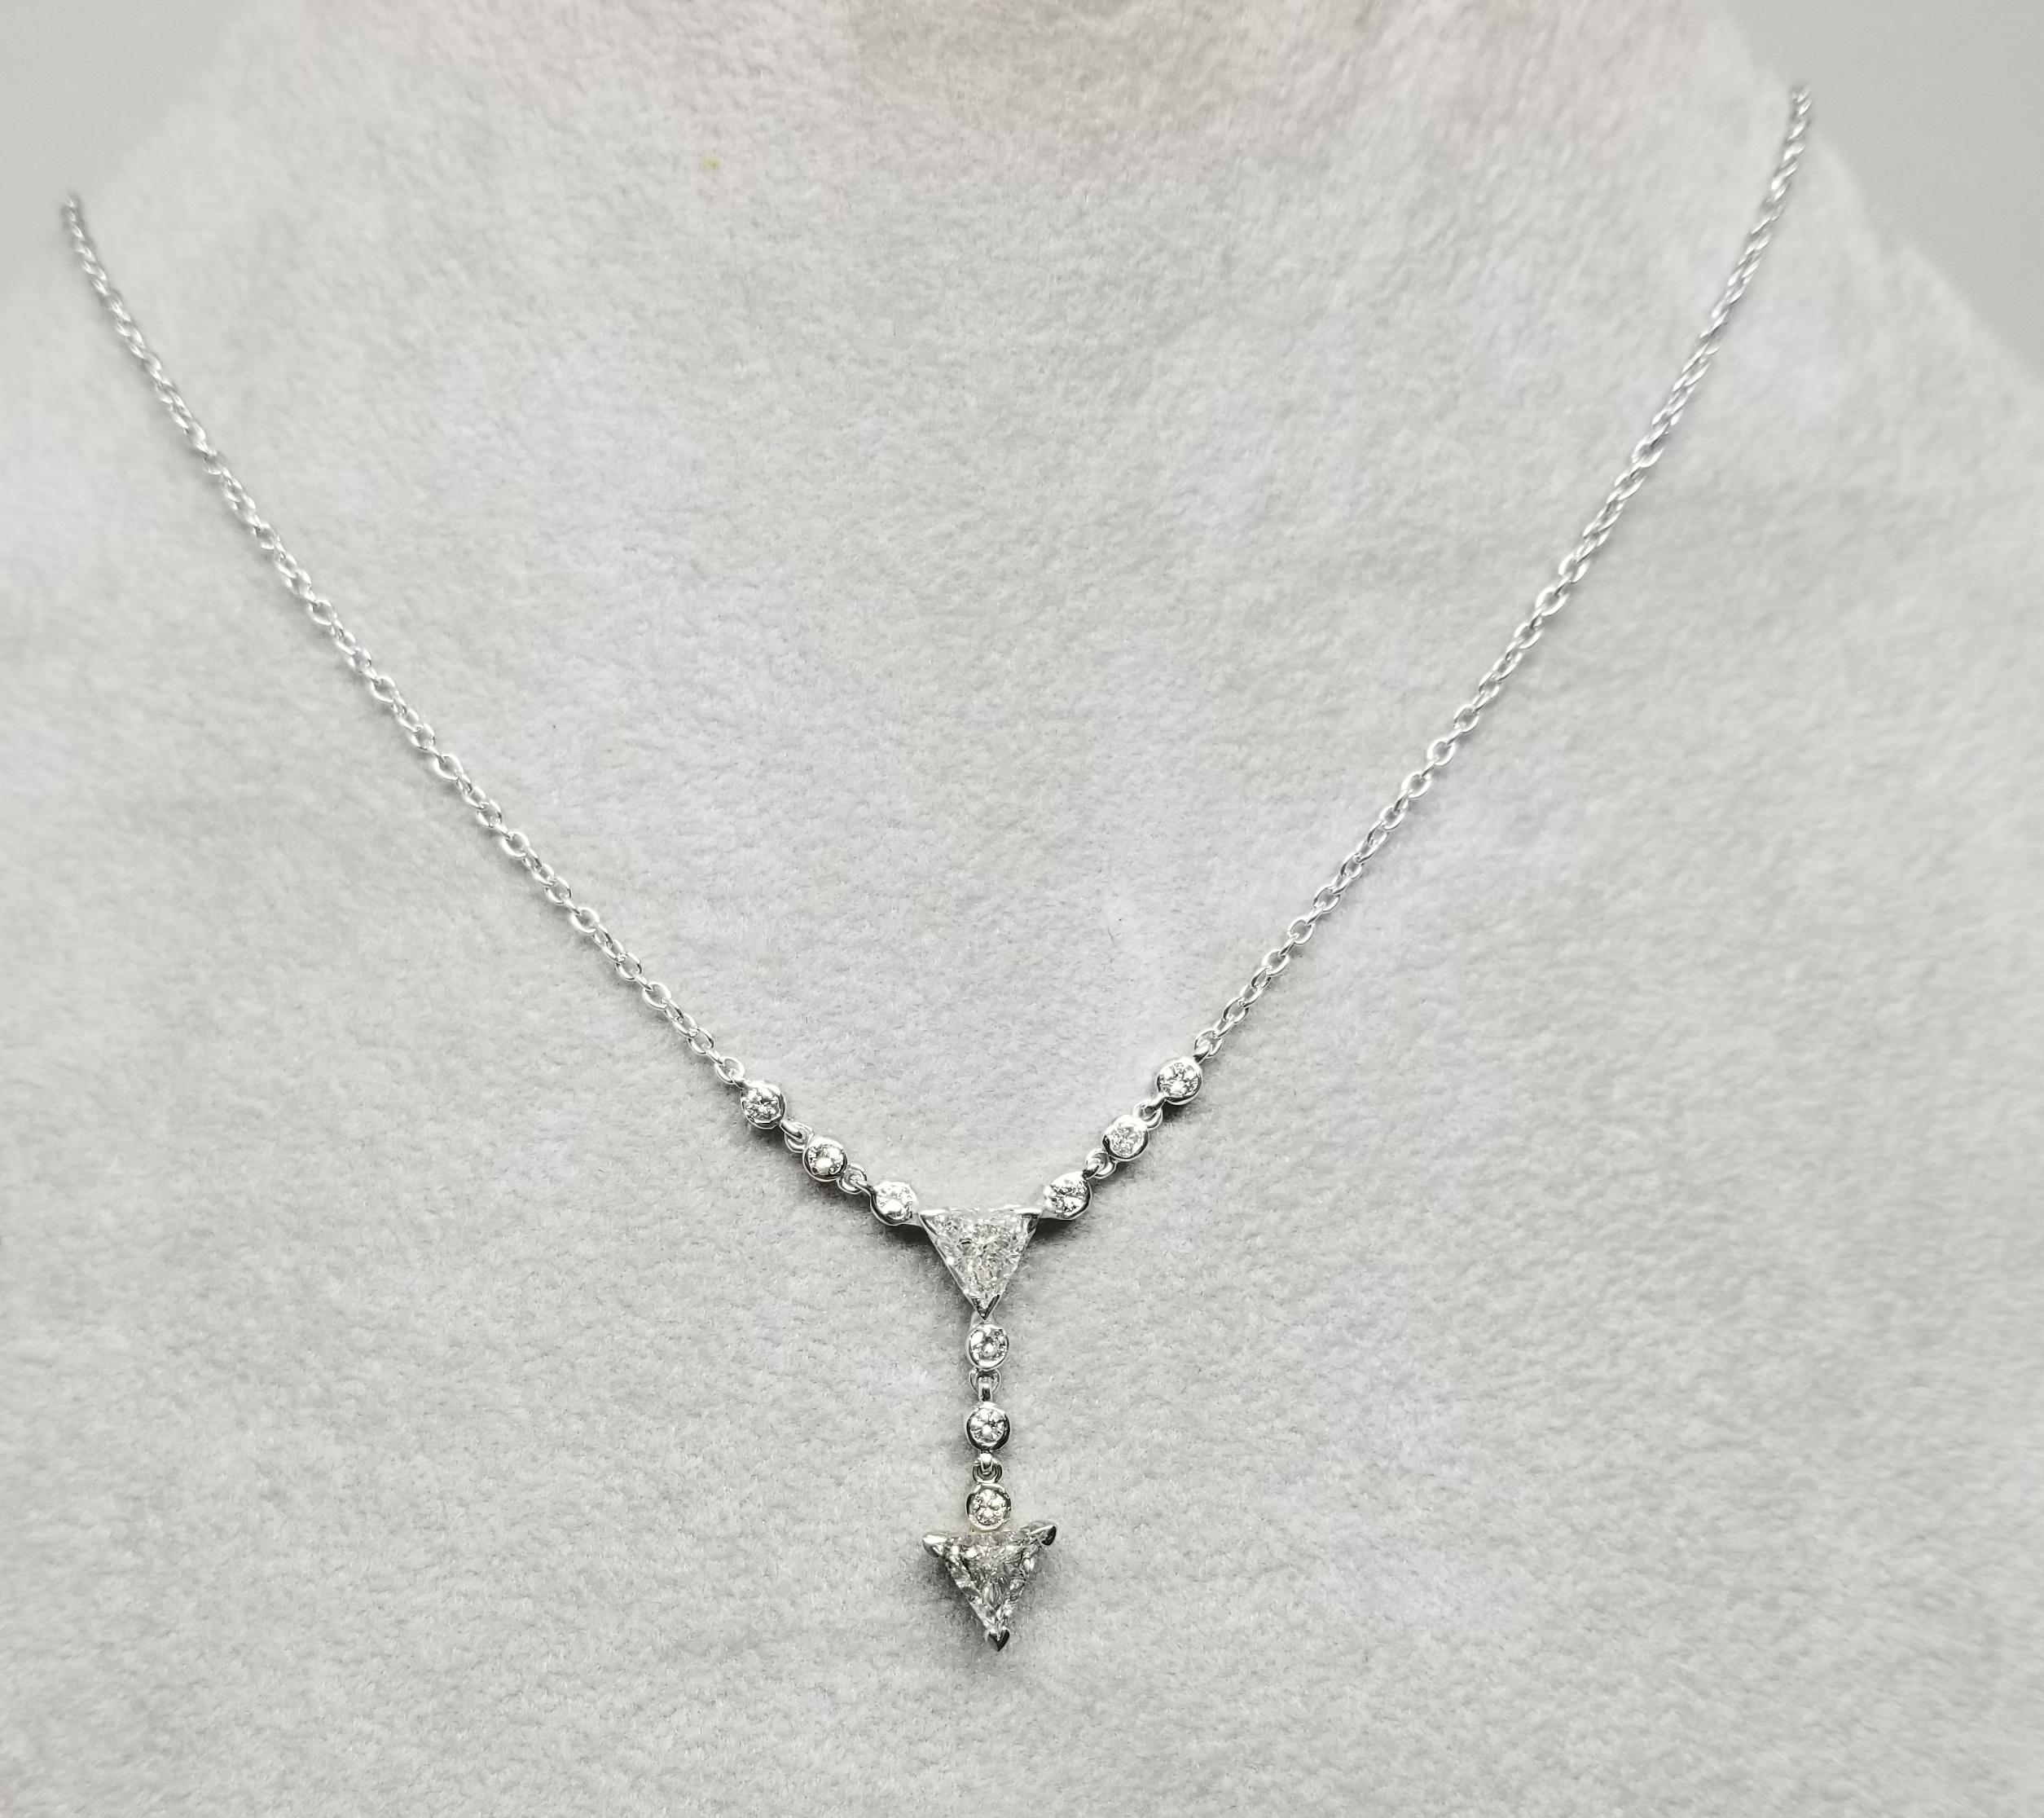 14 Karat  Dreieckiger Diamantanhänger mit 2 dreieckig geschliffenen Diamanten mit einem Gewicht von 0,90 Pence und 9 runden Vollschliffdiamanten mit einem Gewicht von 0,30 Pence an einer kleinen 16-Zoll-Gliederkette.